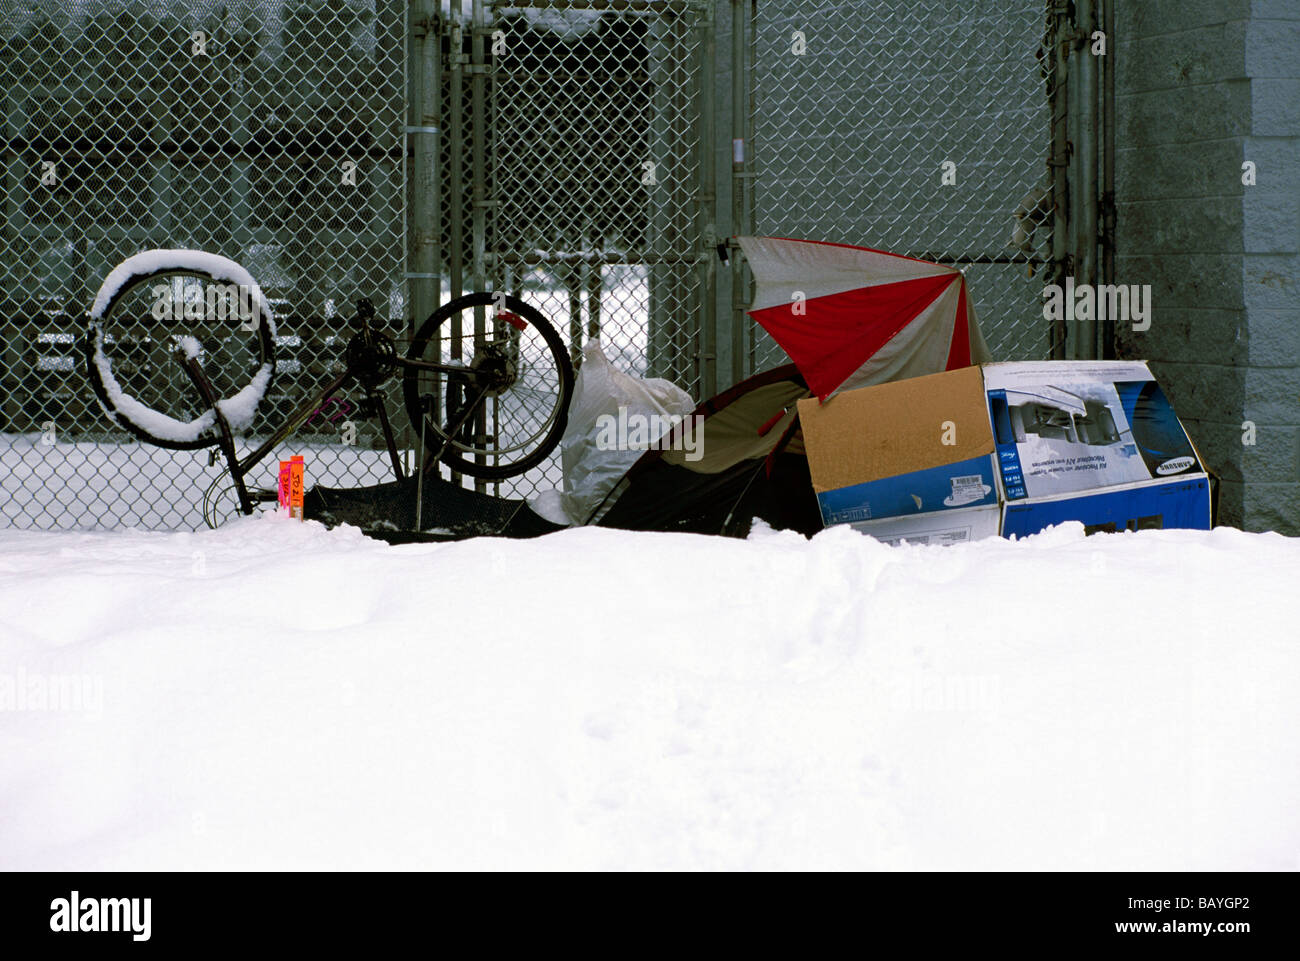 Obdachlose Person provisorischen Heim und Obdach in urbane Stadt, Nordamerika, Winter Schnee Stockfoto